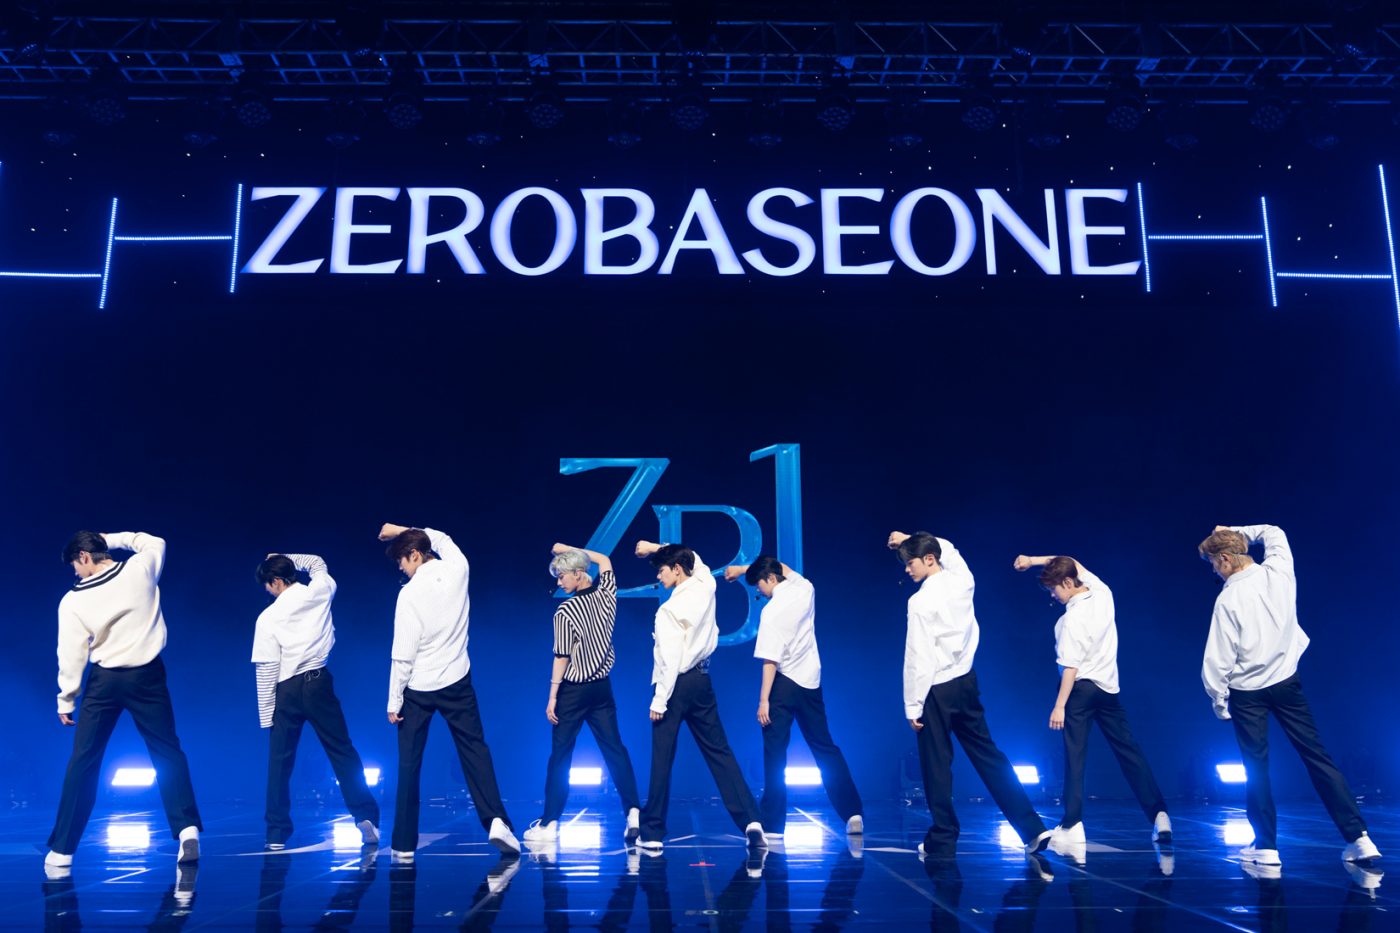 【レポート】第5世代K-POPグループZEROBASEONEデビューショーケース。9人の初々しい表情から溢れ出る意欲と自信 - 画像一覧（10/13）